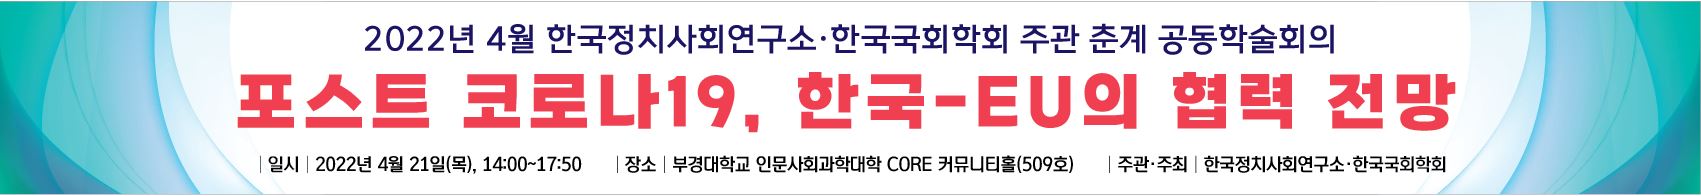 포스트 코로나19, 한국-EU의 협력 전망 공동학술회의 개최